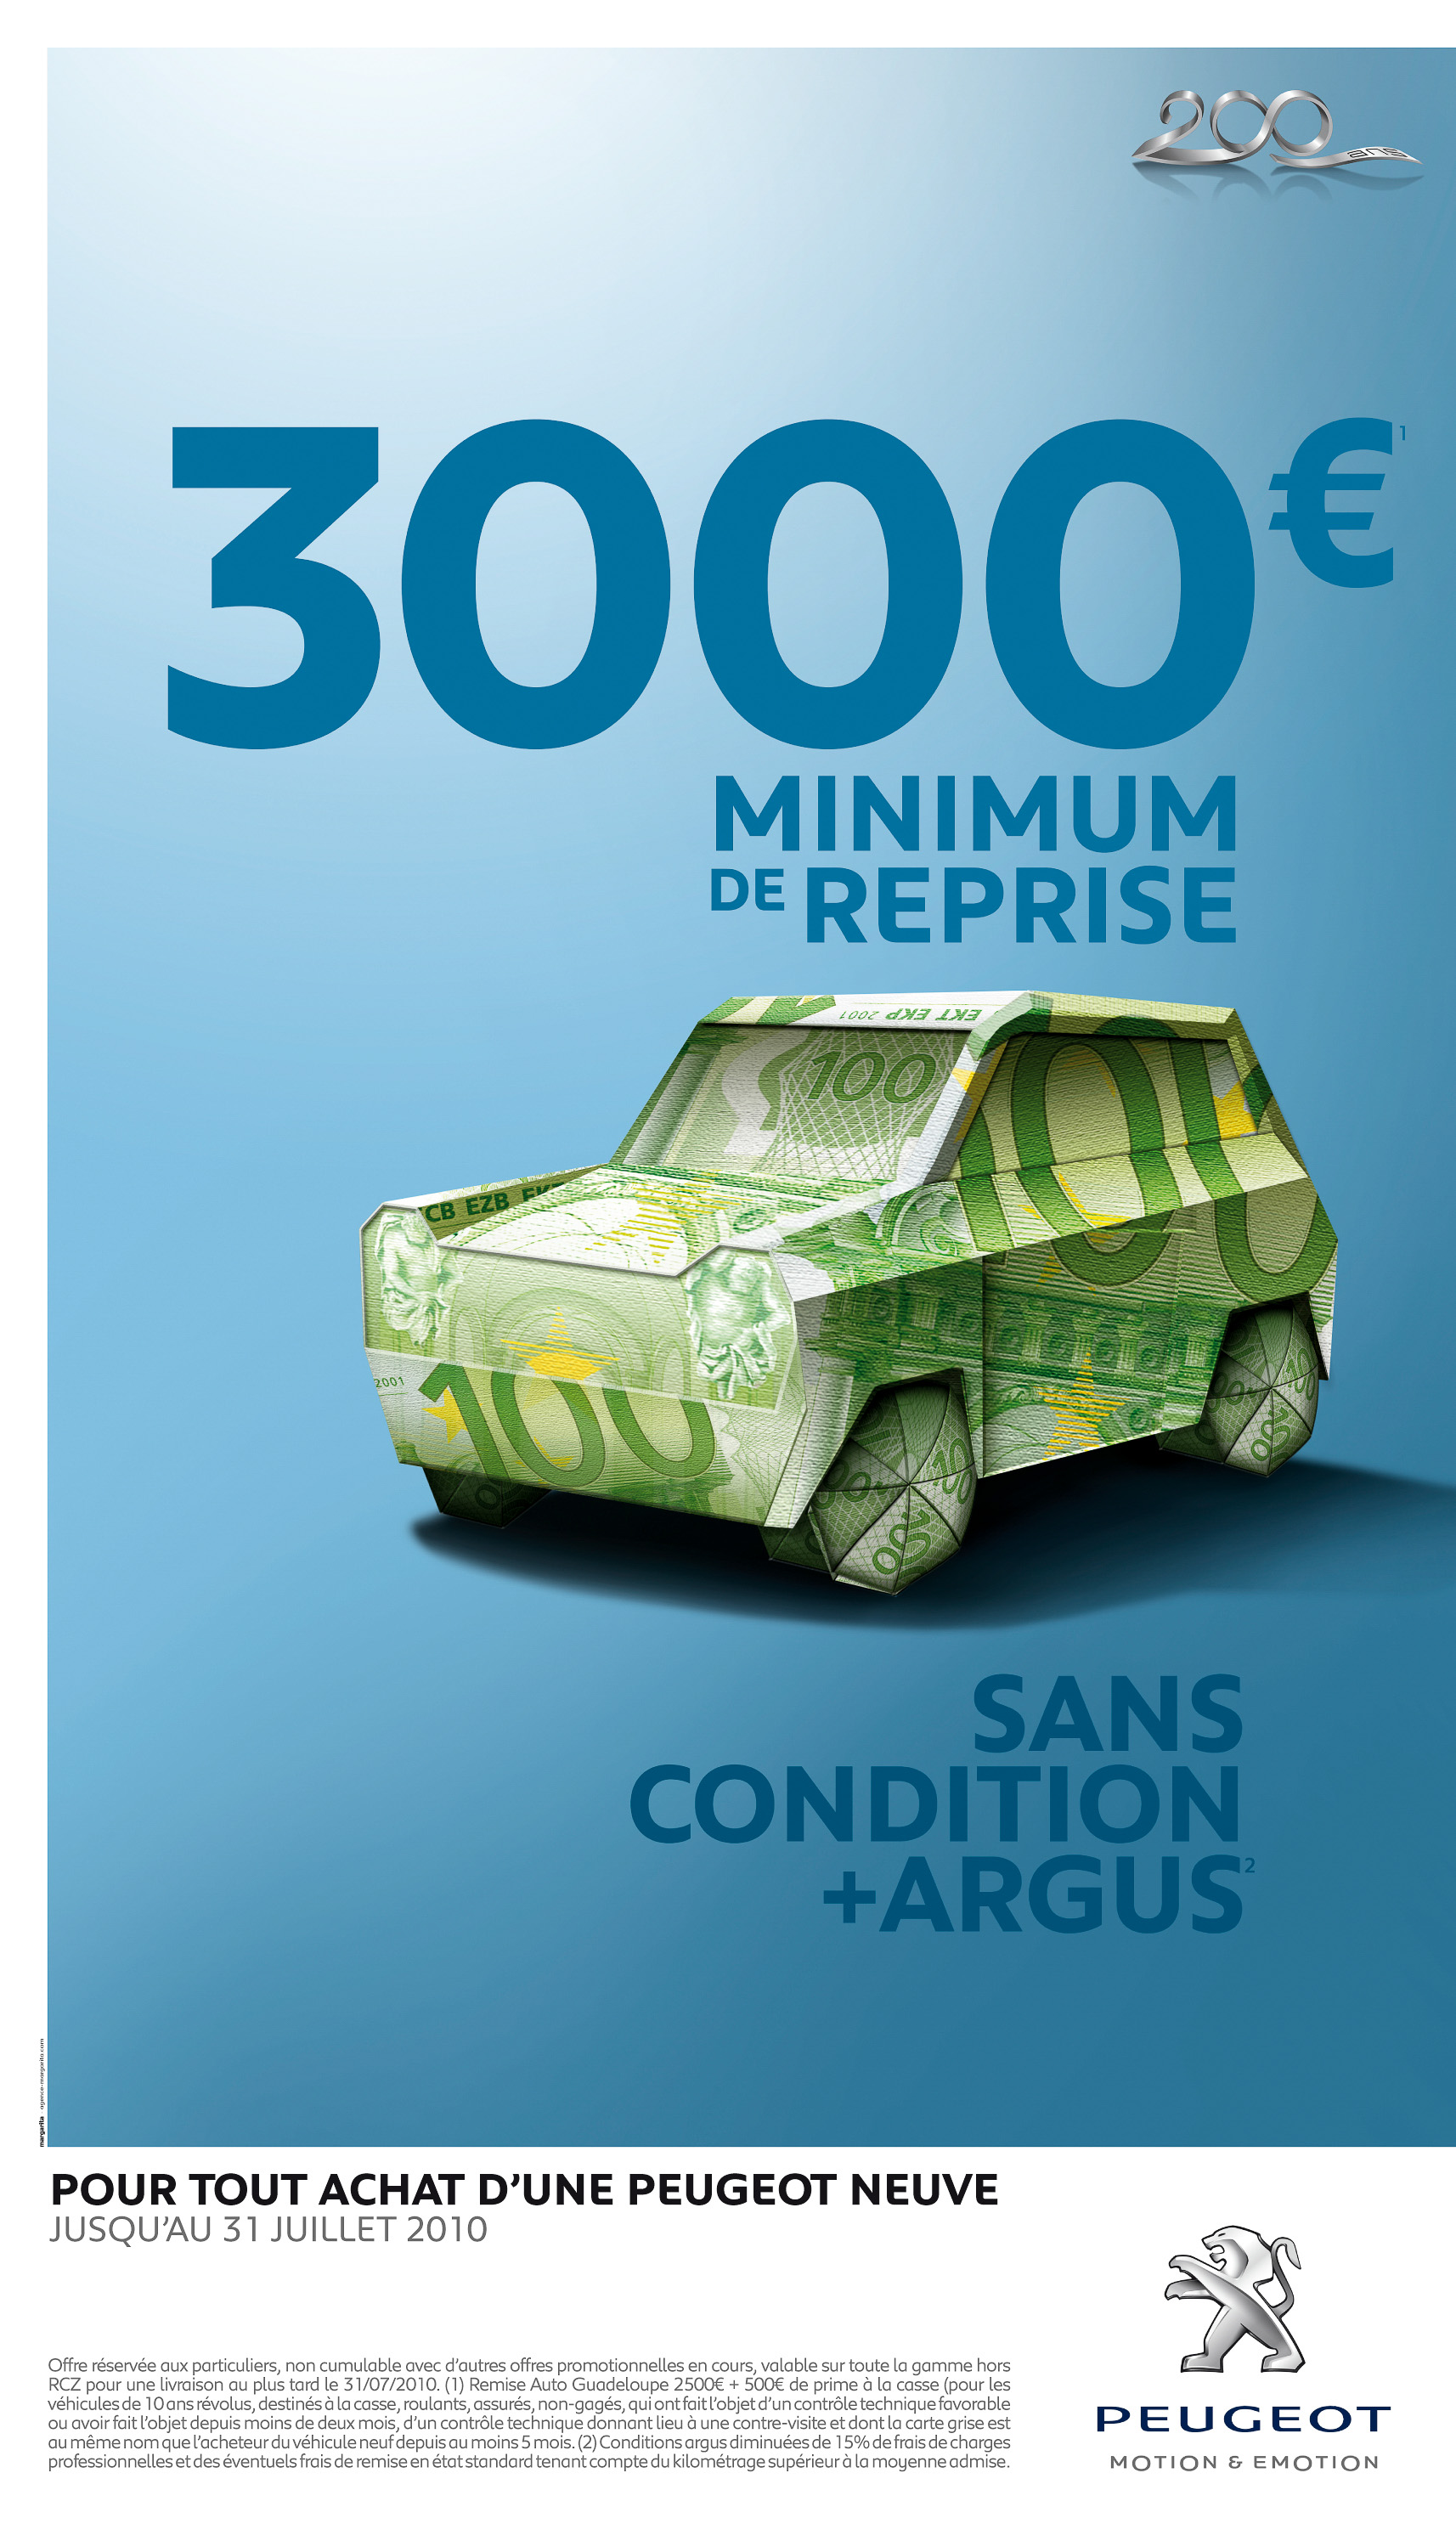 PLV en concession relayant la campagne sur l'offre de reprise Peugeot